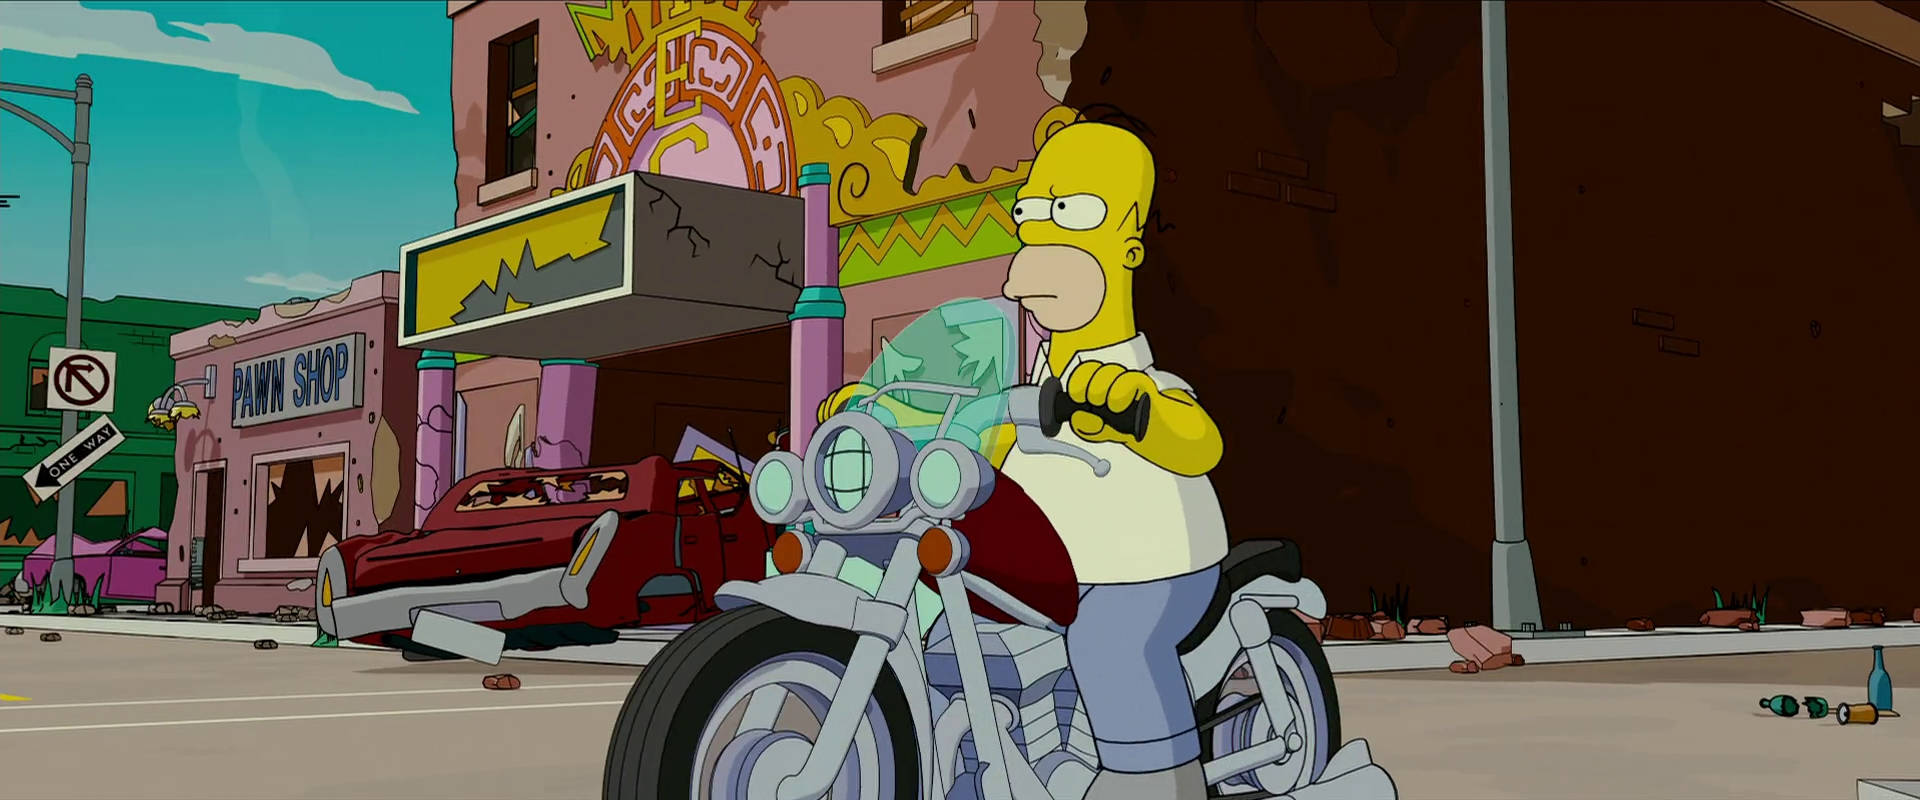 Homersimpson På Motorcykel, Från Filmen The Simpsons Movie. Wallpaper